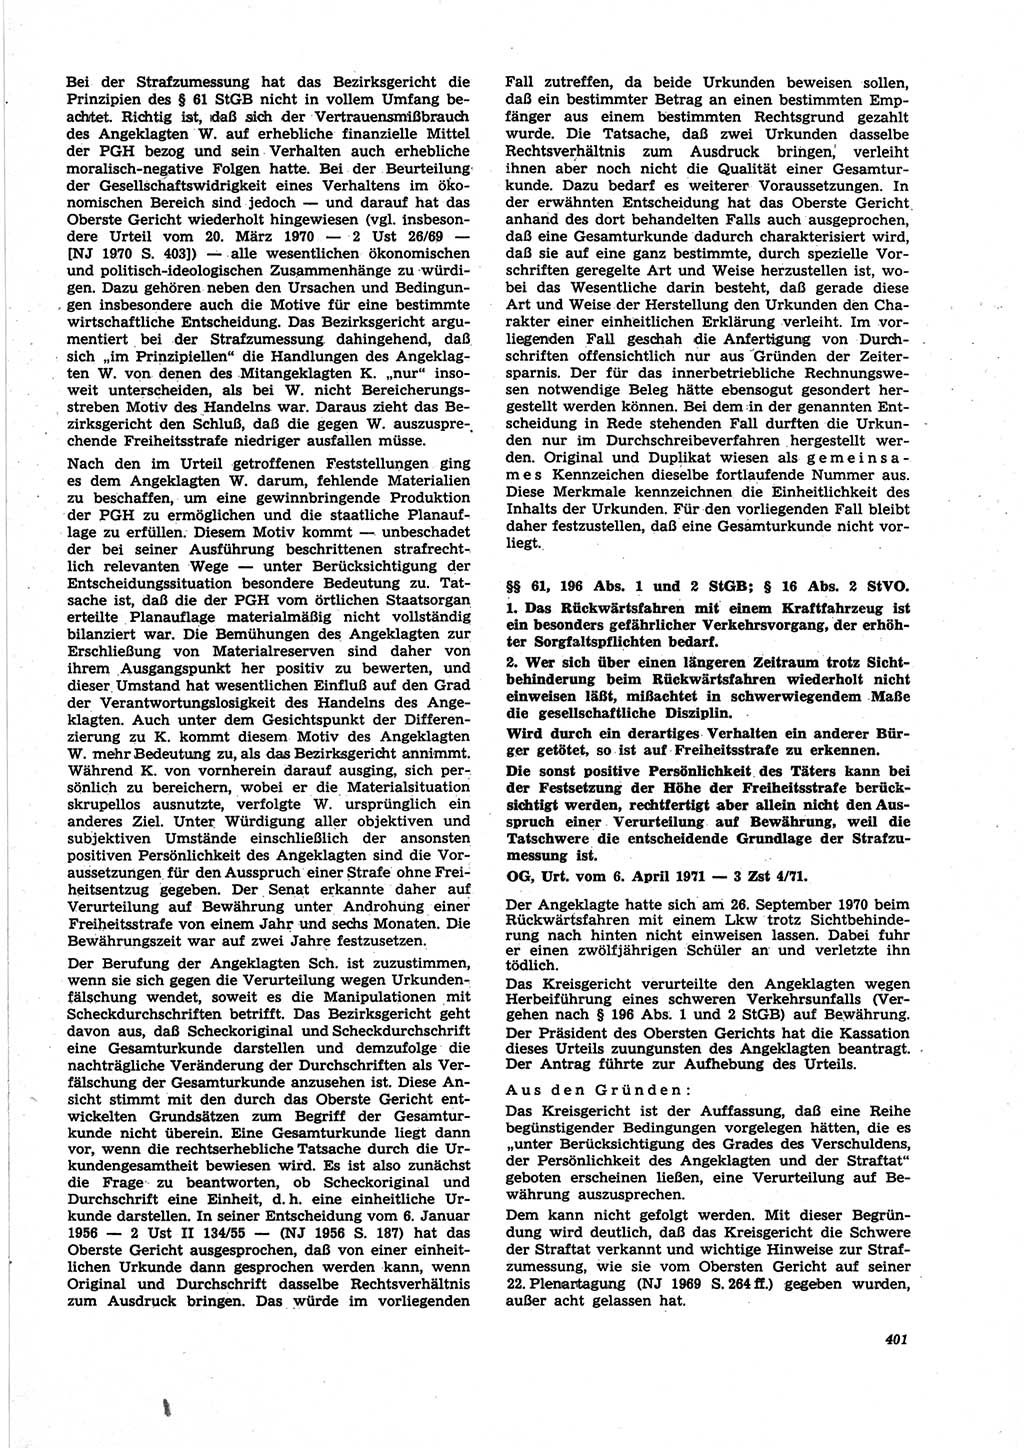 Neue Justiz (NJ), Zeitschrift für Recht und Rechtswissenschaft [Deutsche Demokratische Republik (DDR)], 25. Jahrgang 1971, Seite 401 (NJ DDR 1971, S. 401)